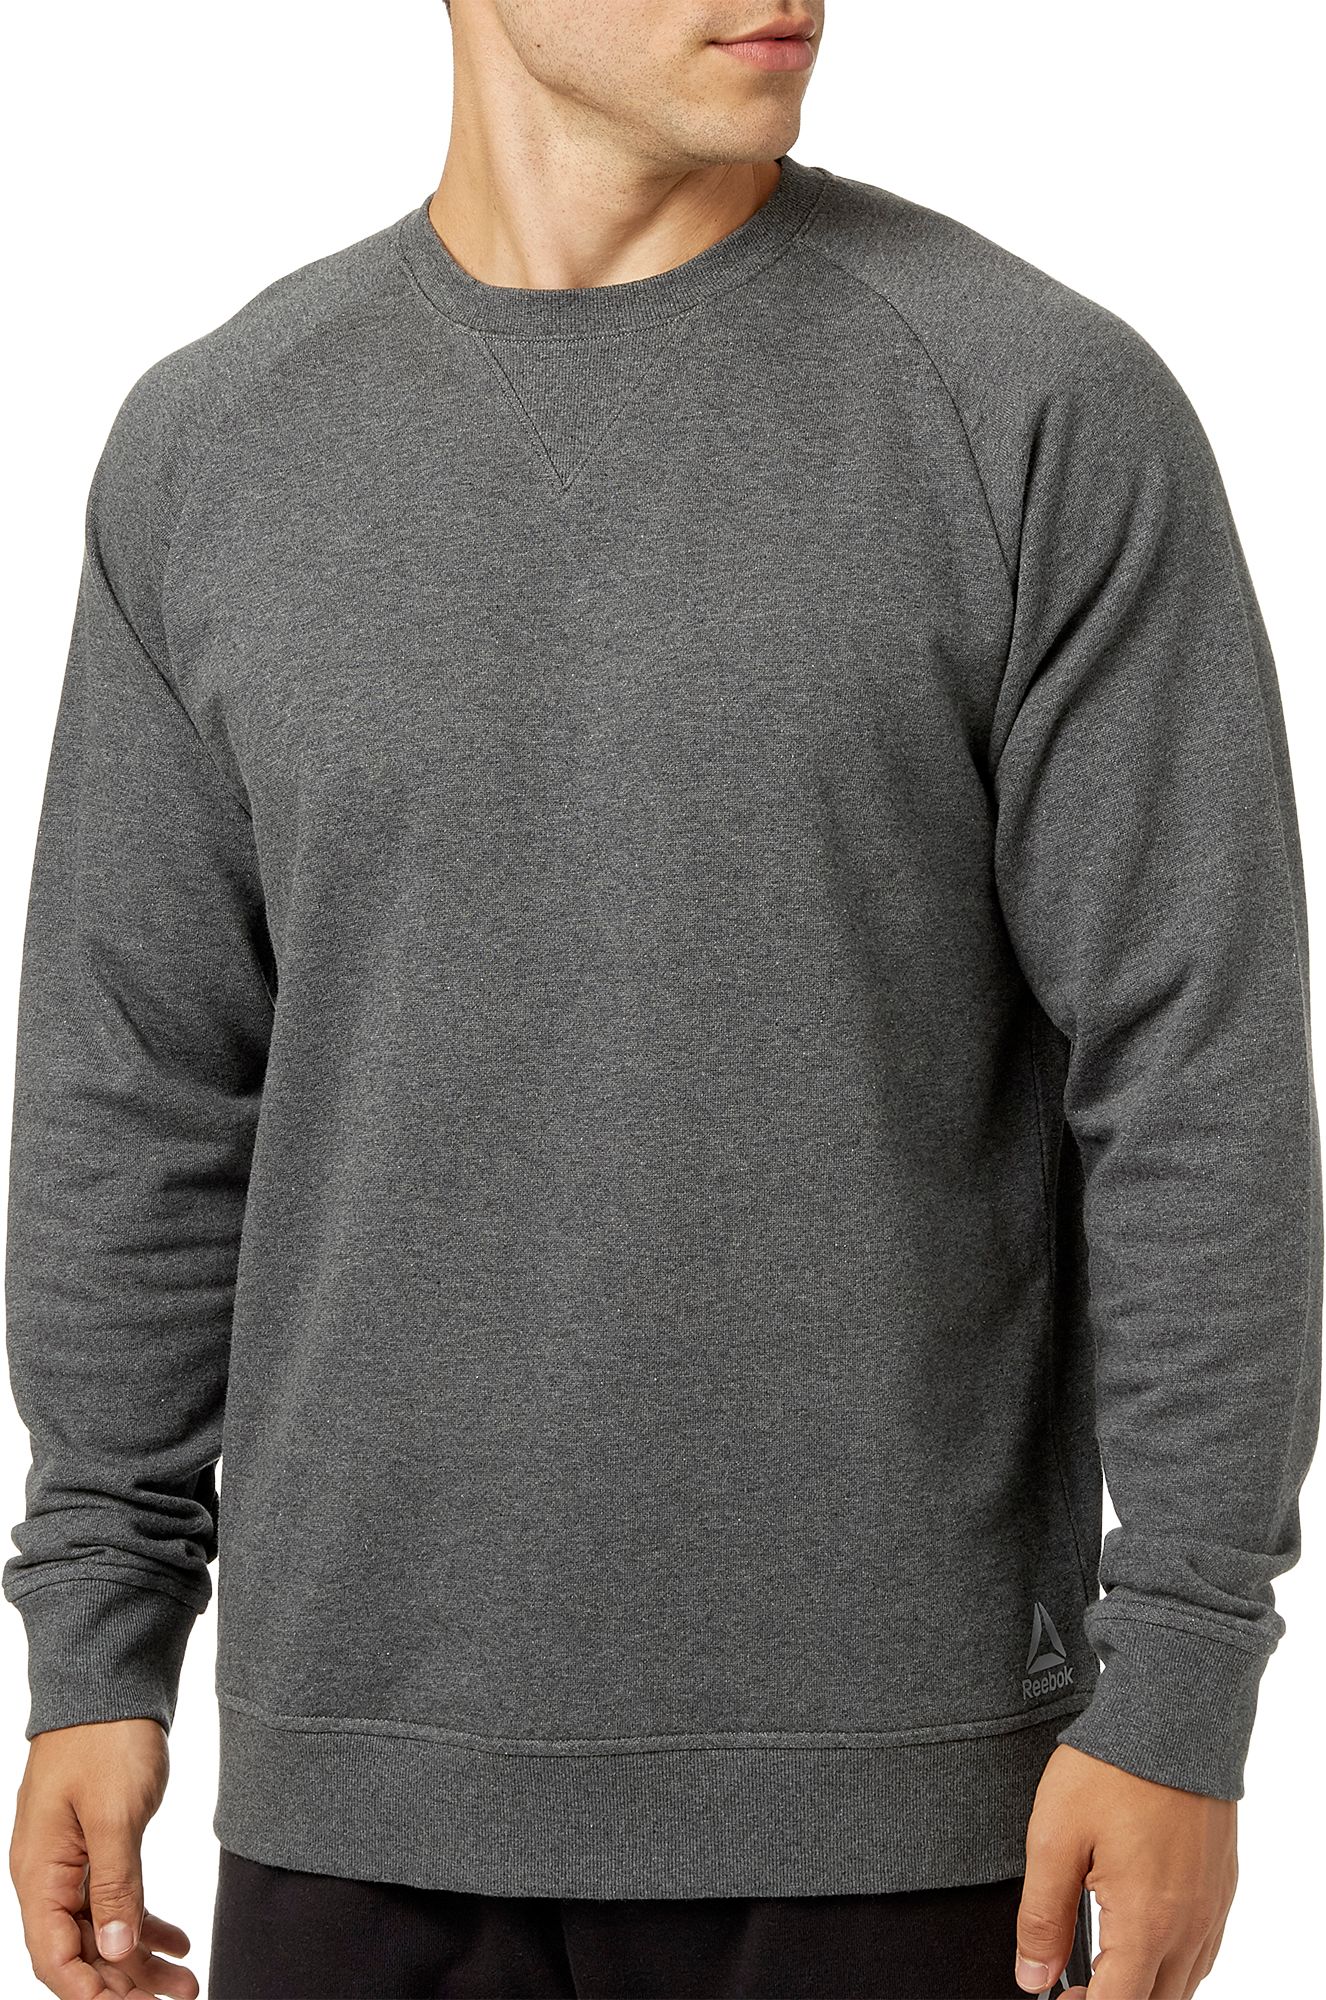 Men's Hoodies & Men's Sweatshirts | Best Price Guarantee at DICK’S